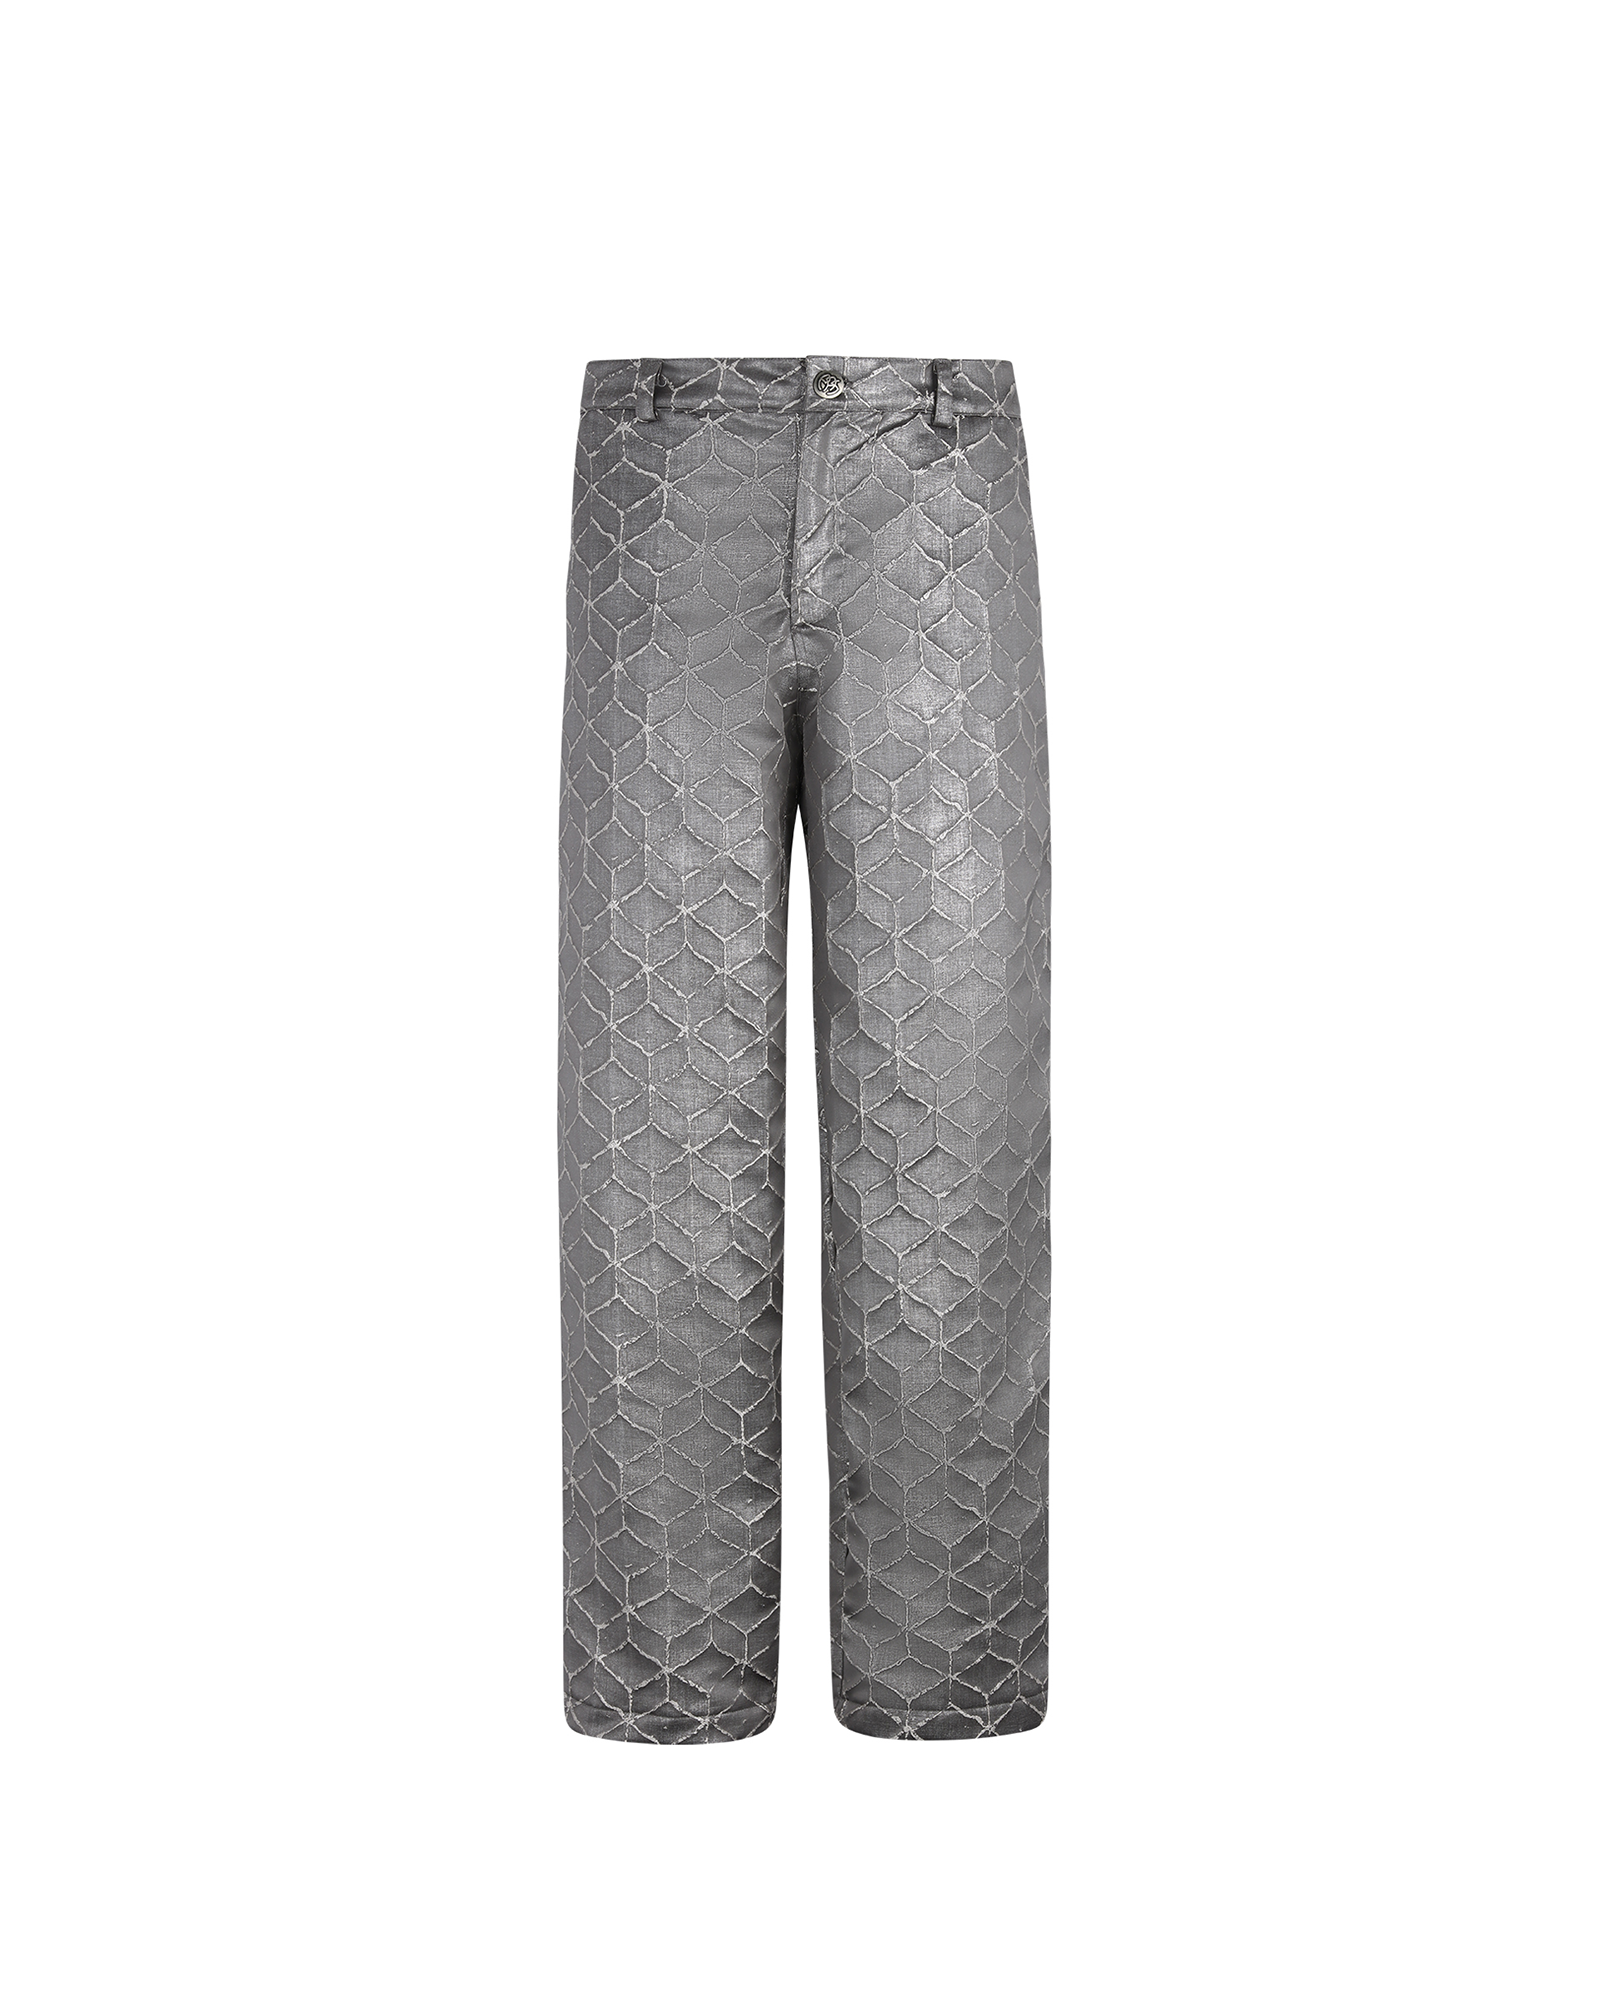 Silver Flamé Pants